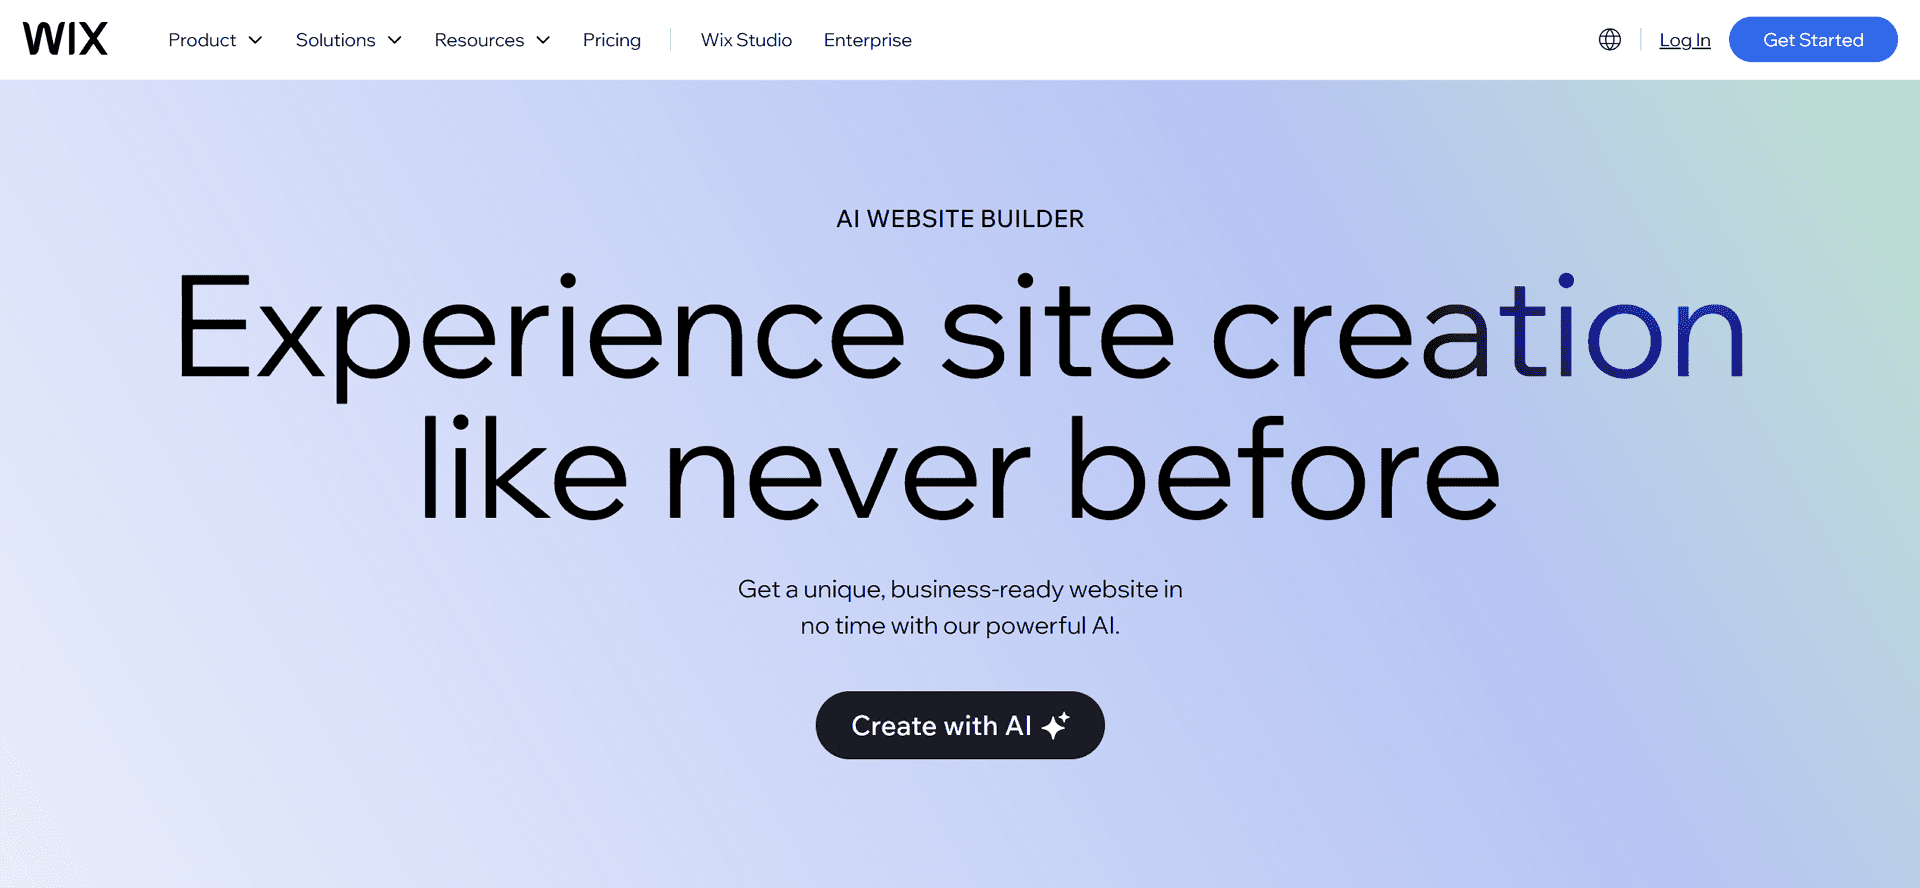 Wix AI Website Builder